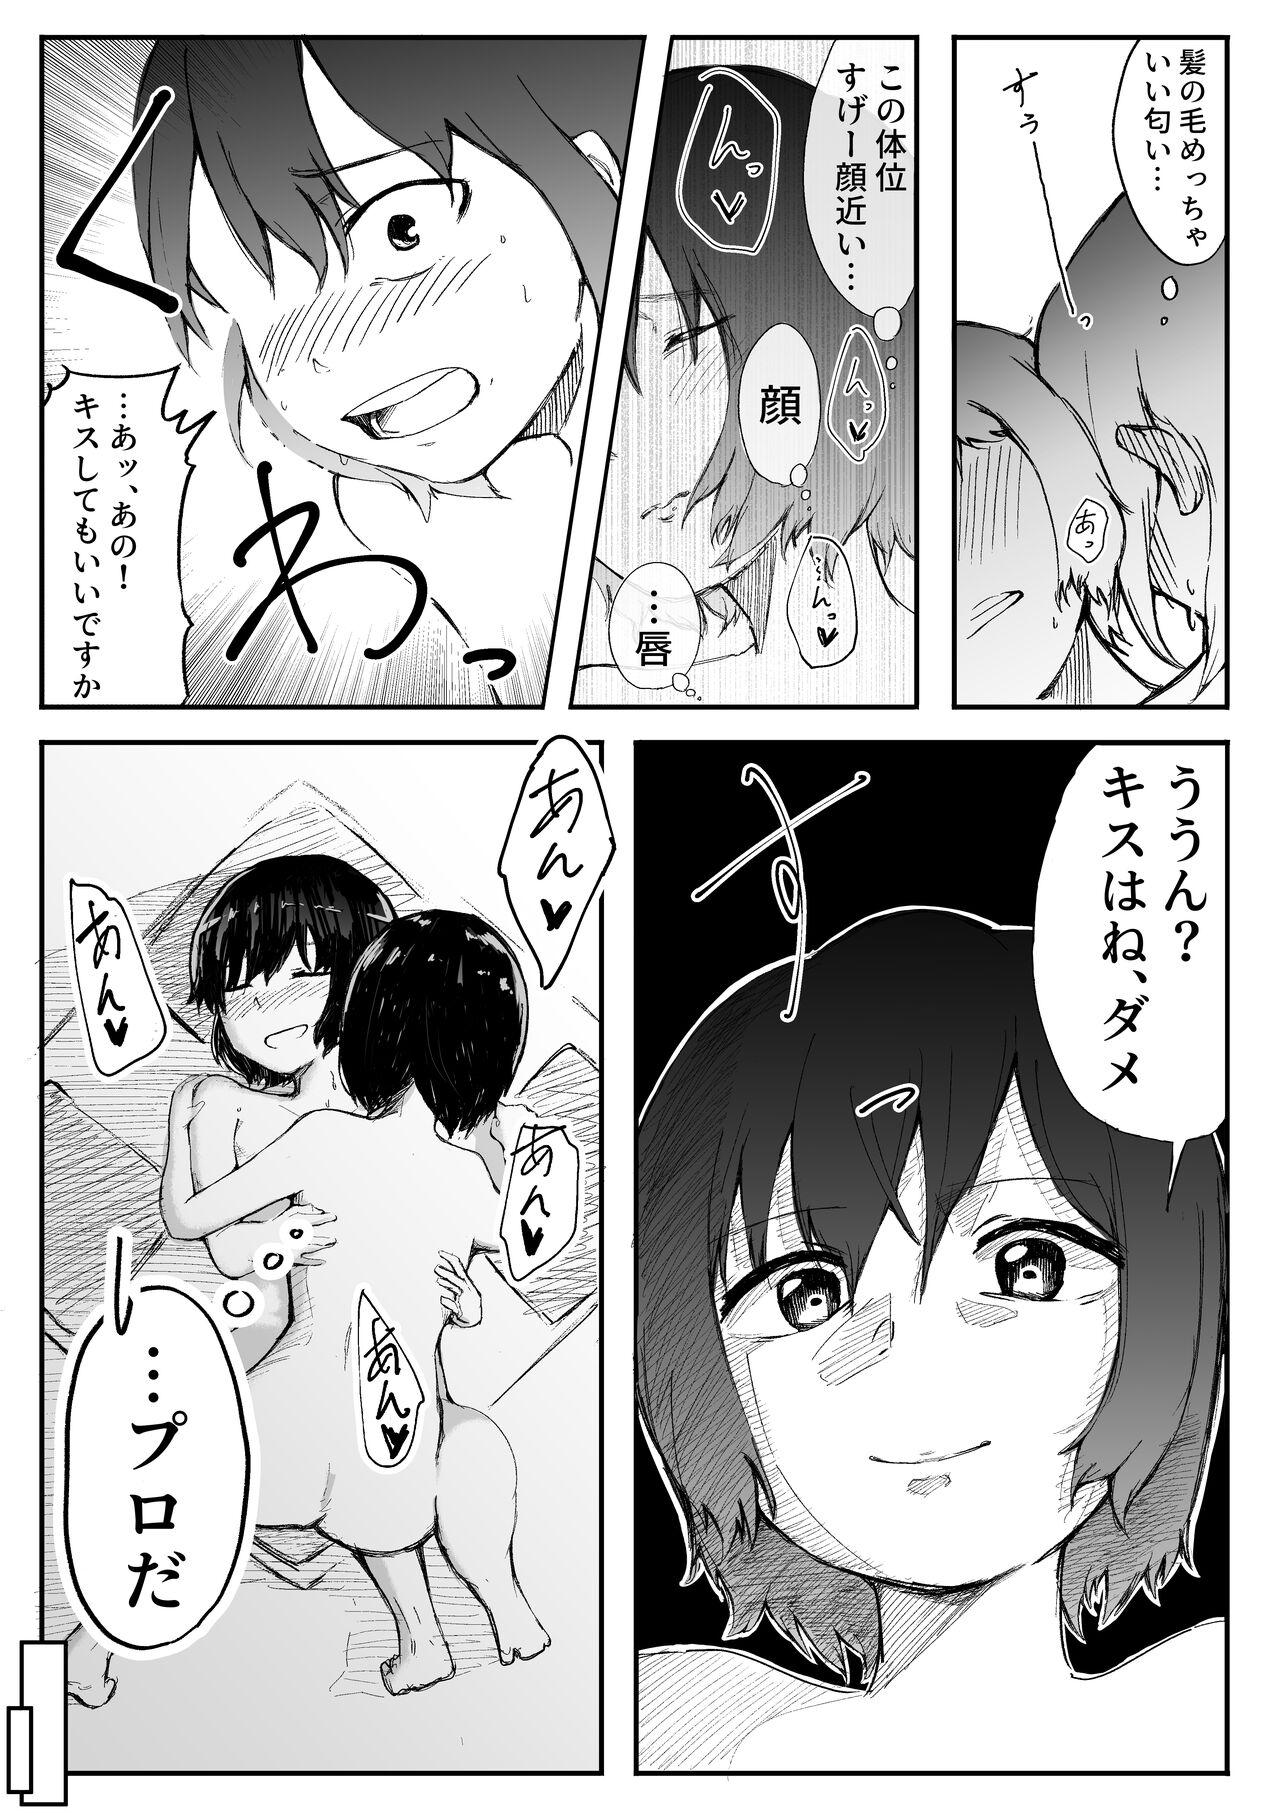 【風俗レポ漫画】飛田新地で童貞を捨てた話 25